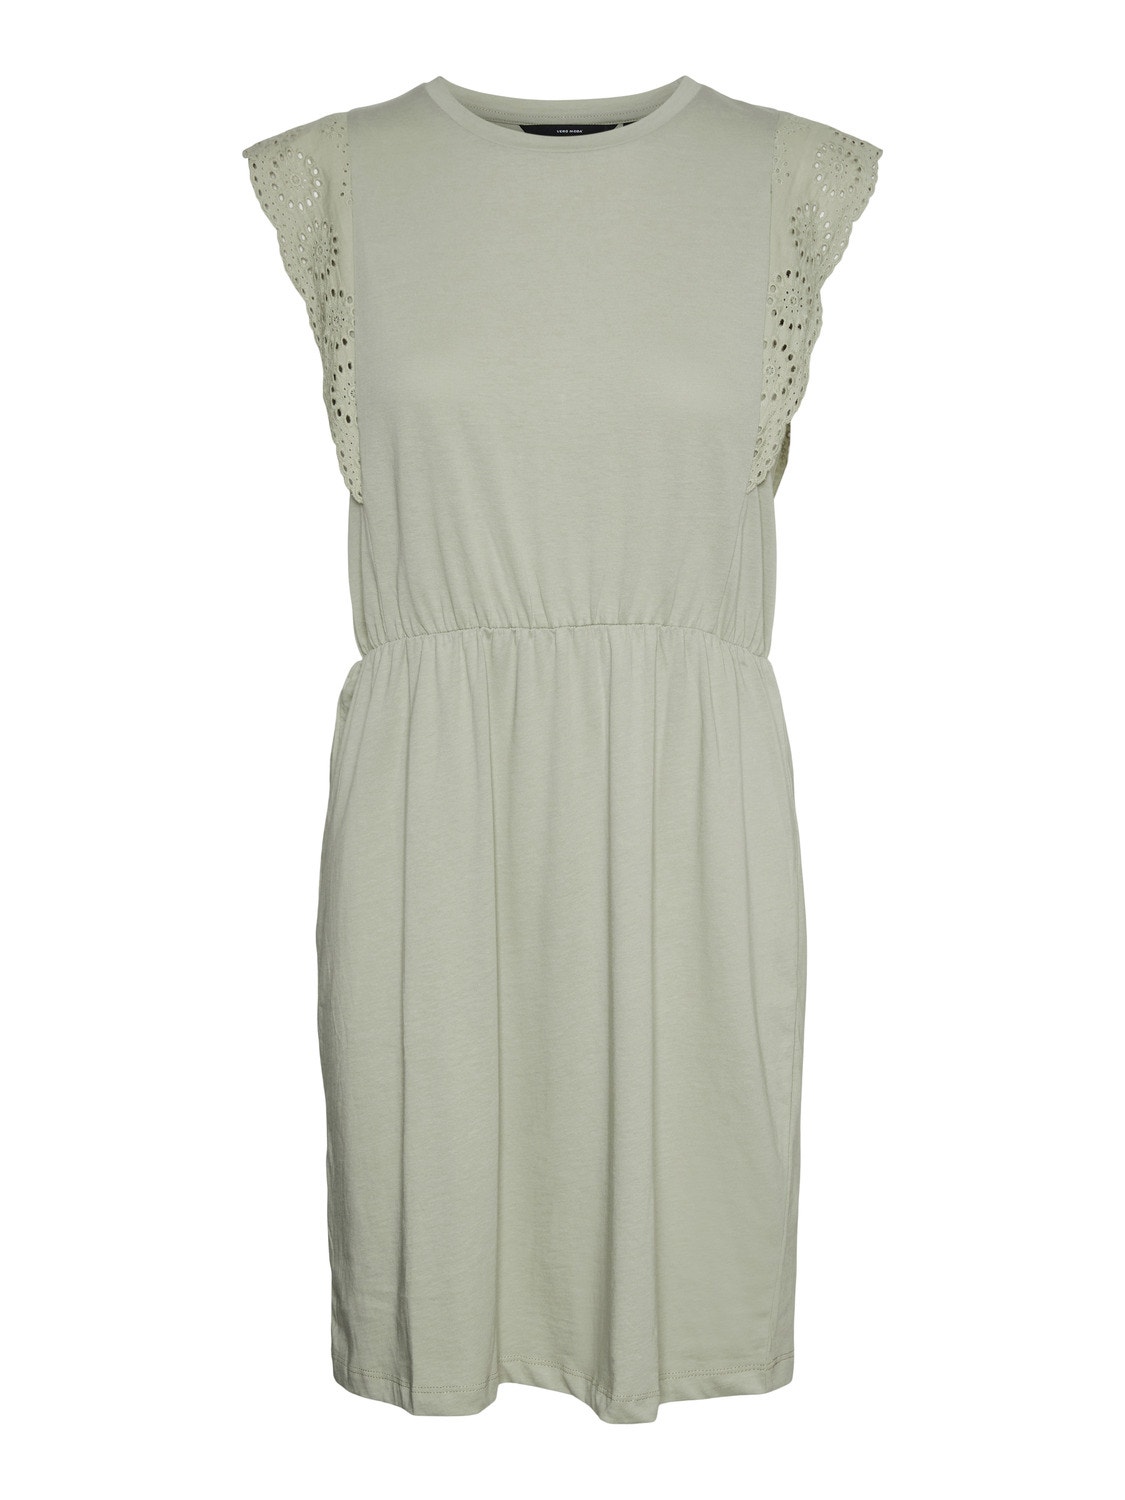 Vero Moda VMHOLLYN Short dress -Desert Sage - 10265206